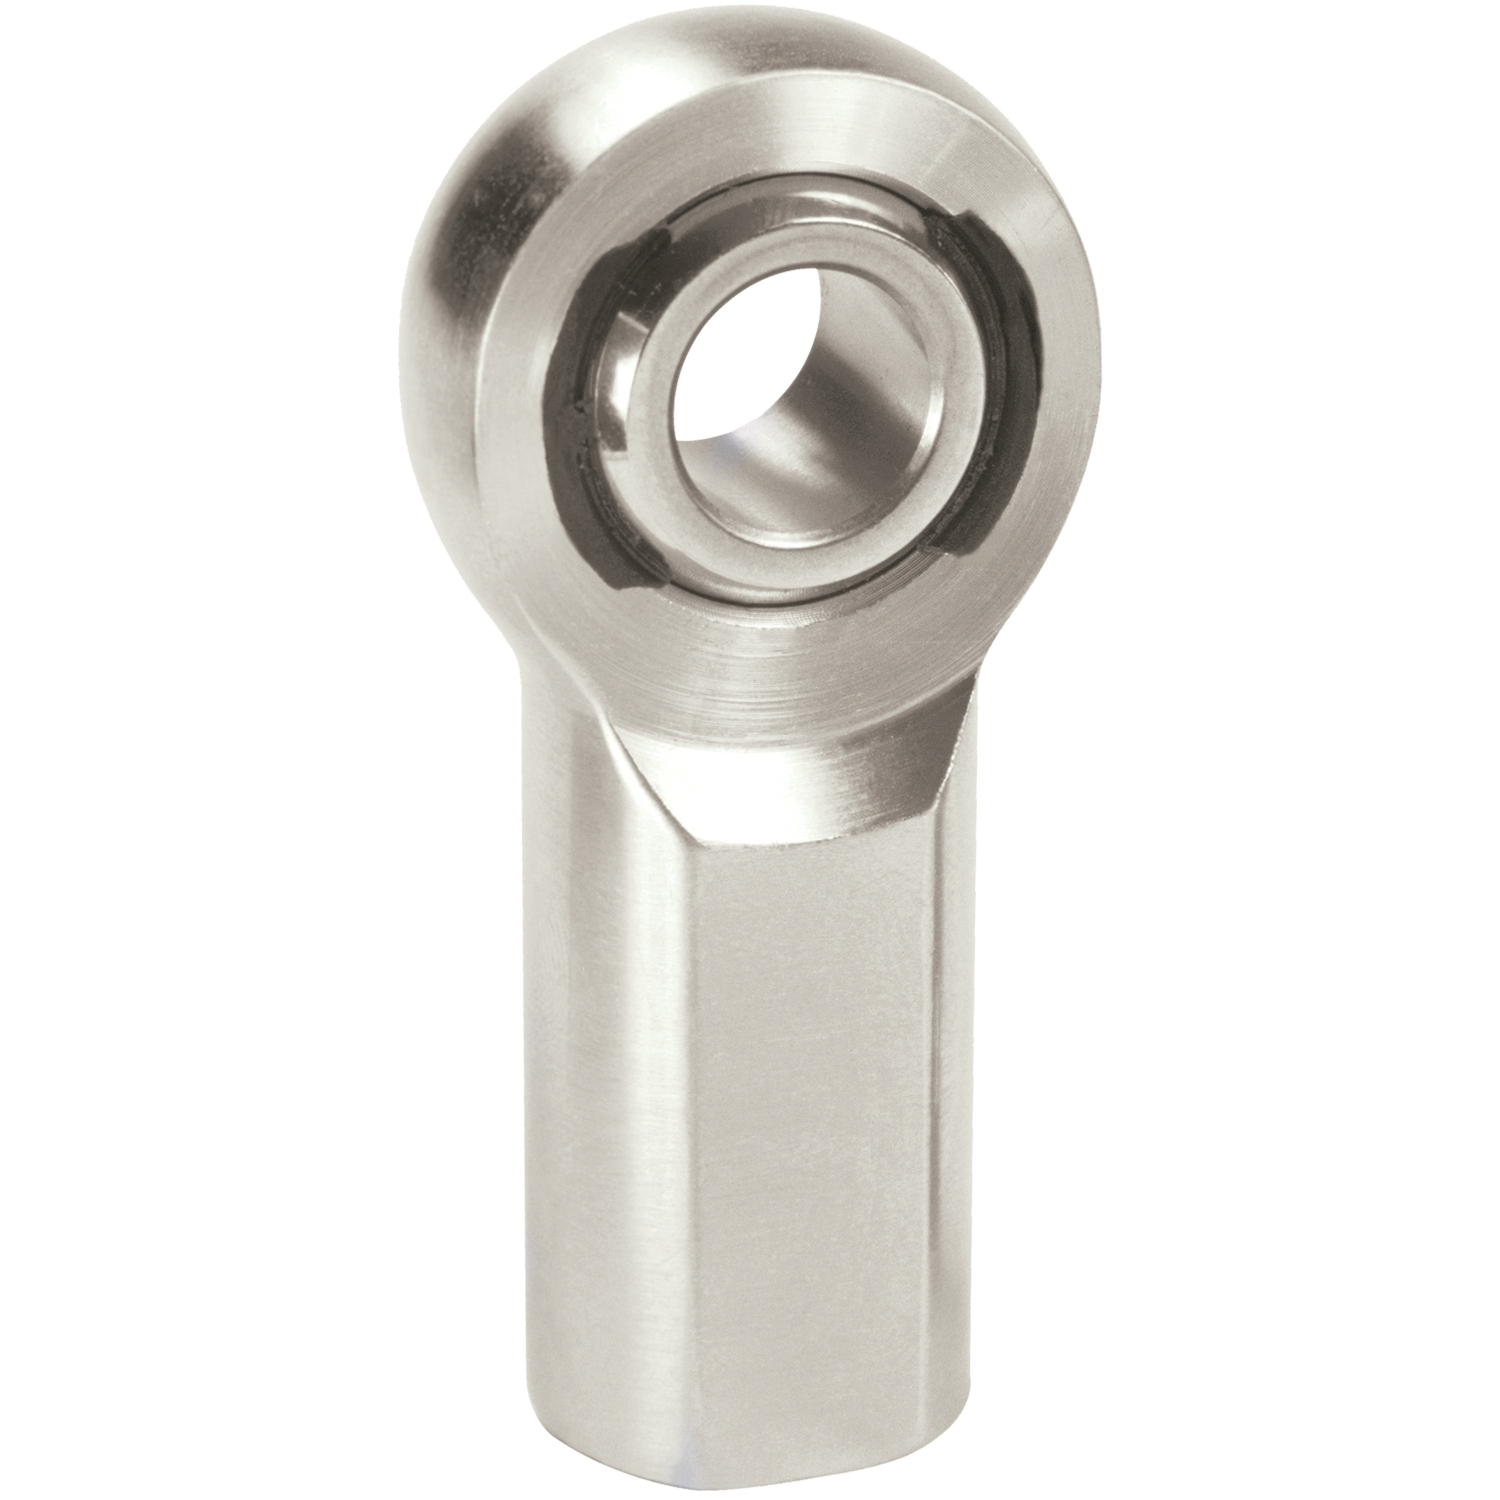 XF Chromoly Steel Series Rod End Hole I.D.: